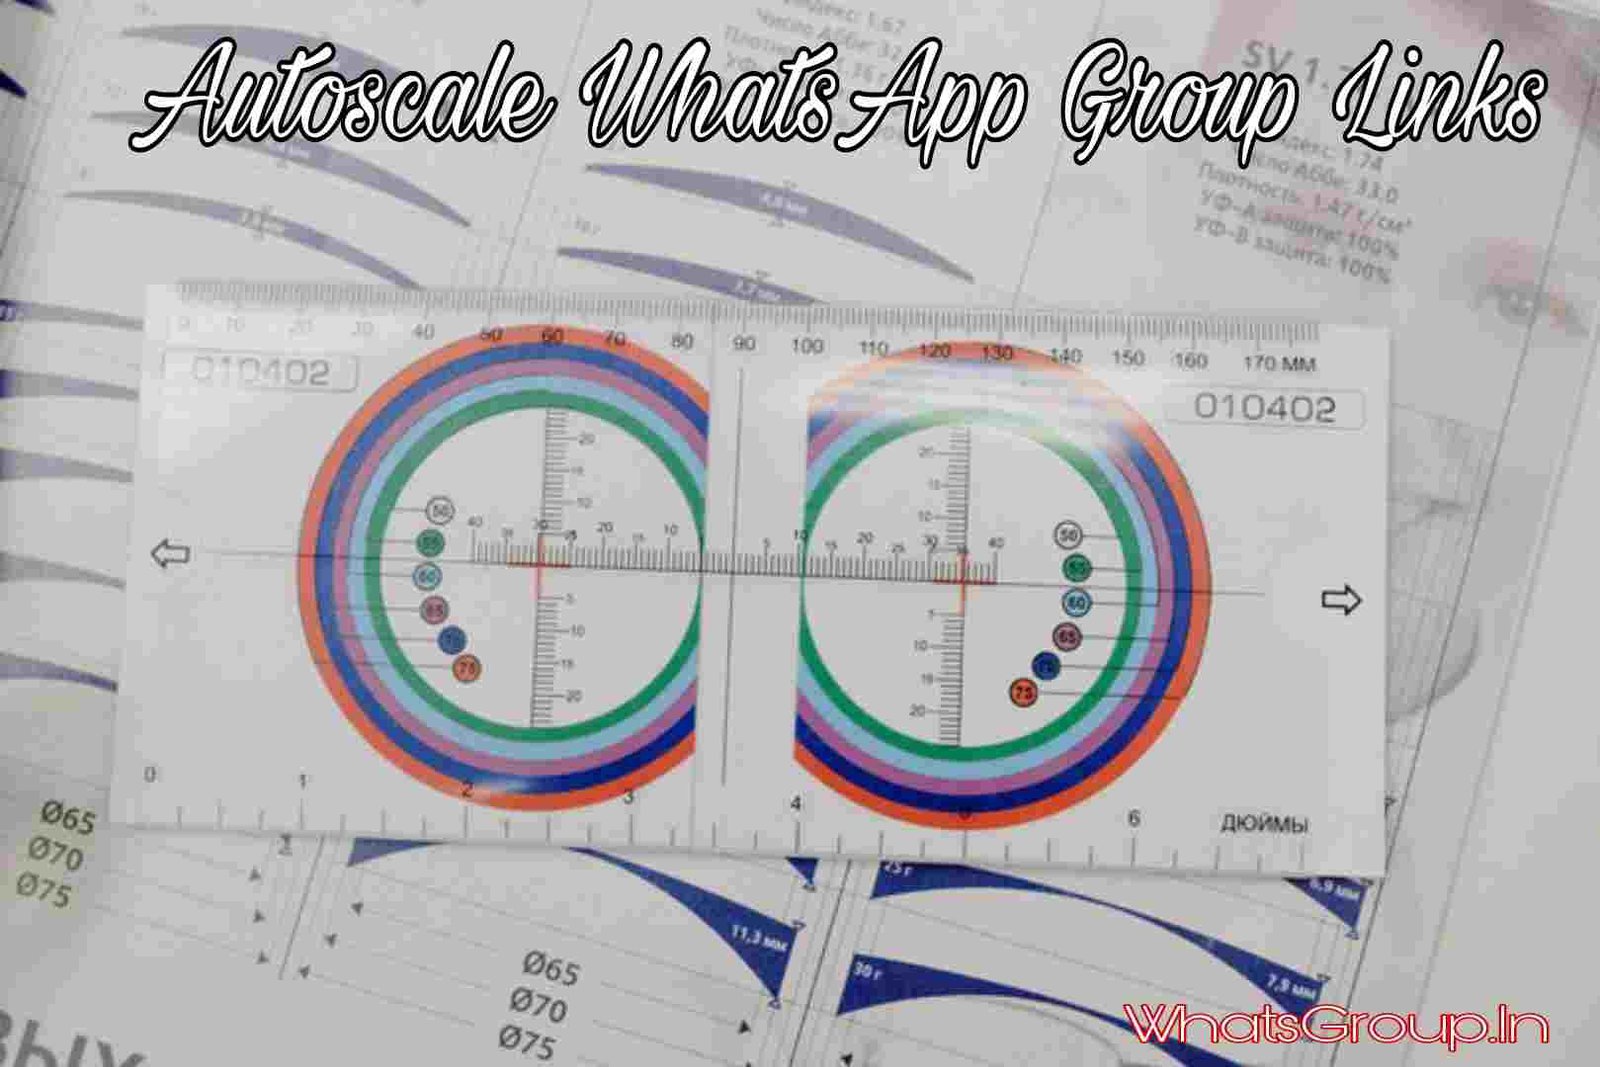 Autoscale WhatsApp Group Links